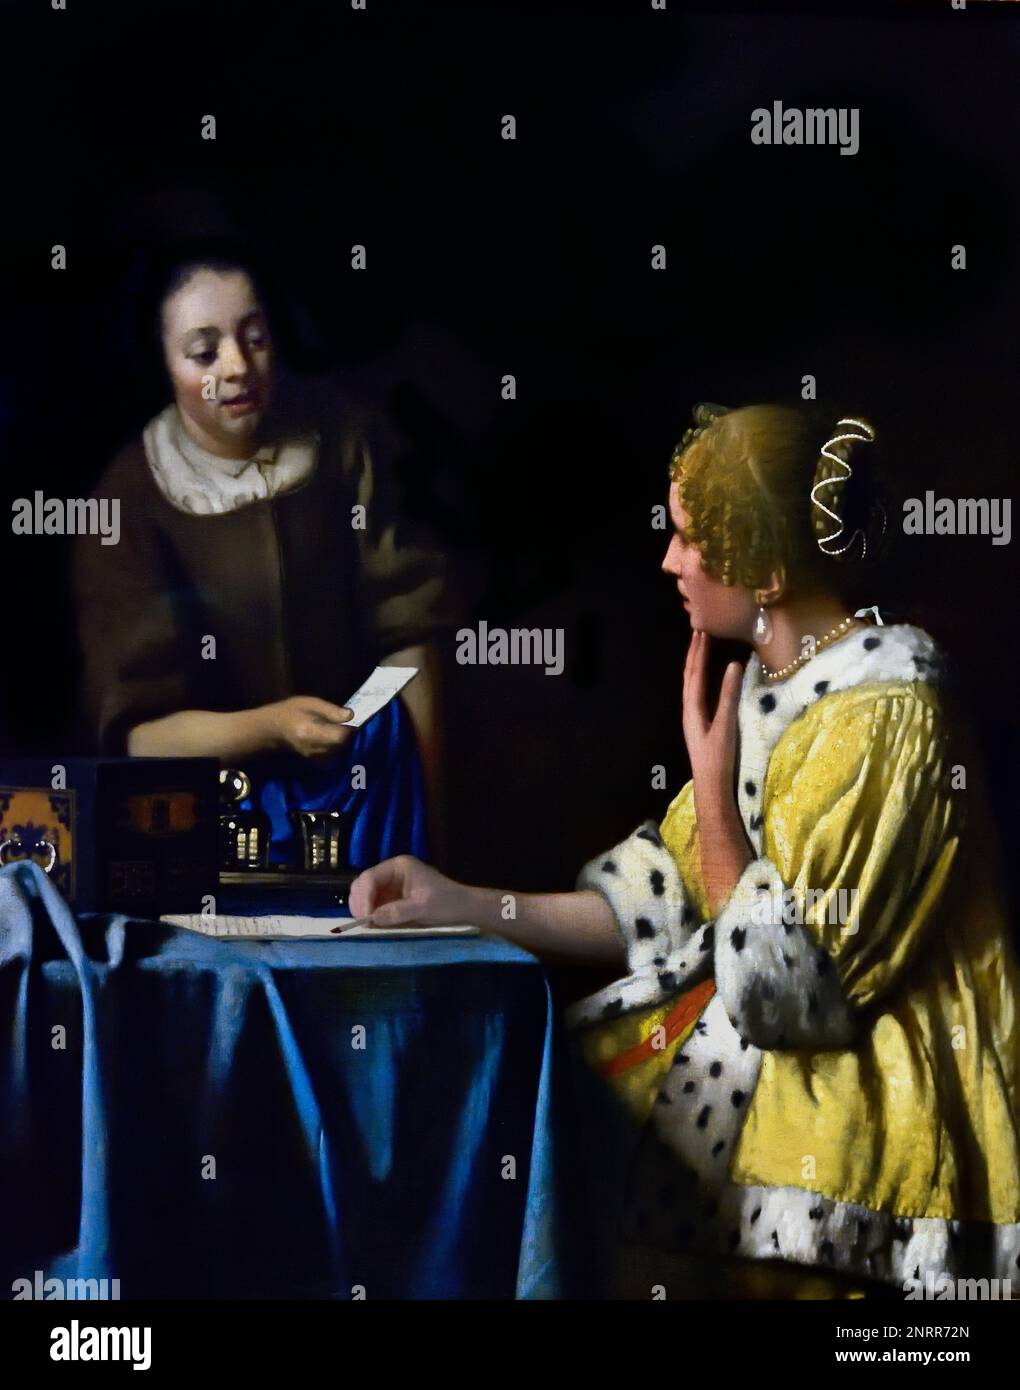 Mistress and Maid 1664-1667 di Johannes Vermeer o Jan Vermeer 1632 - 1675, Delft, Paesi Bassi, Olanda, ( Pittore olandese nell'Età dell'Oro, uno dei più grandi pittori, 17th ° secolo. senza tempo, momenti assennati, rimane enigmatica, inimitabile combinazione di colori e contenuto luminoso sconcertante) Foto Stock